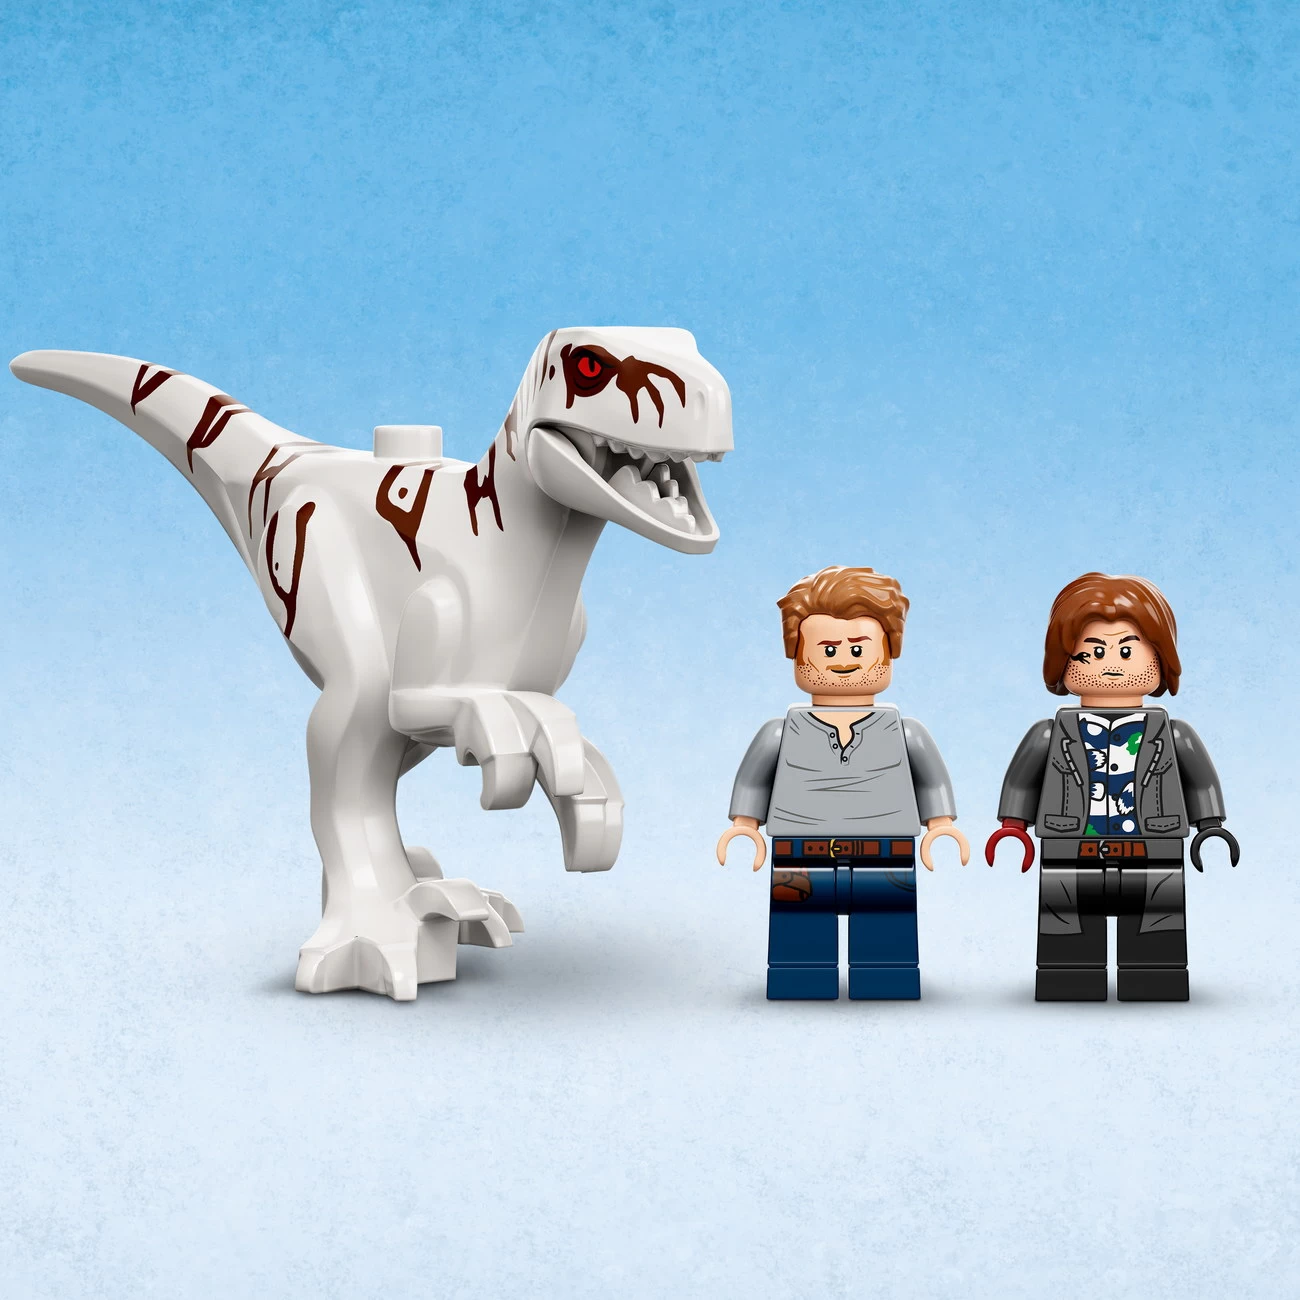 LEGO Jurassic World 76945 - Atrociraptor Motorradverfolgungsjagd